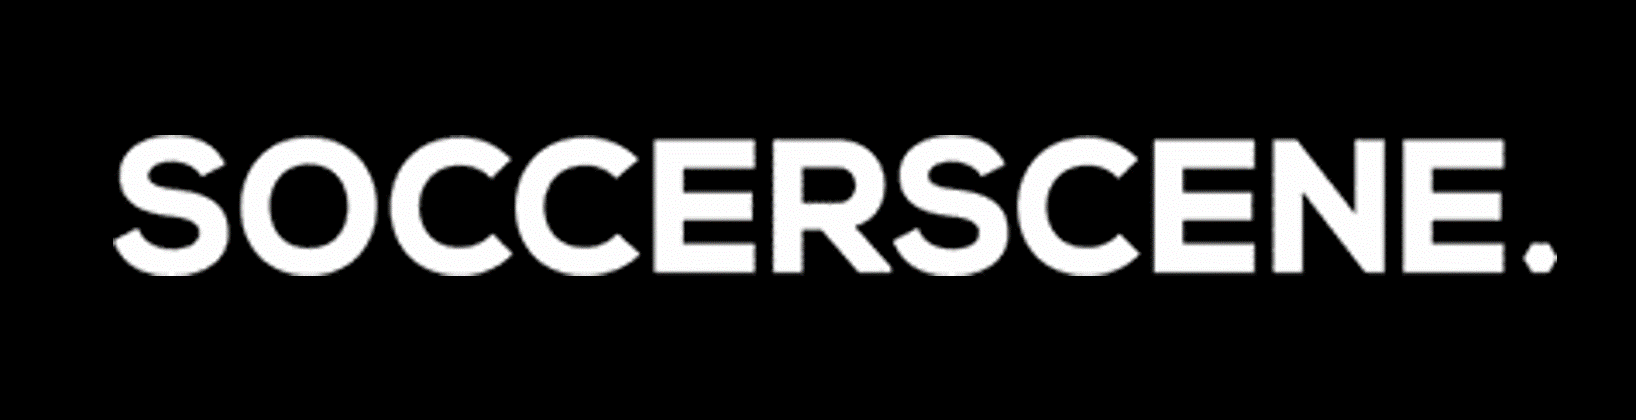 soccerscene logo